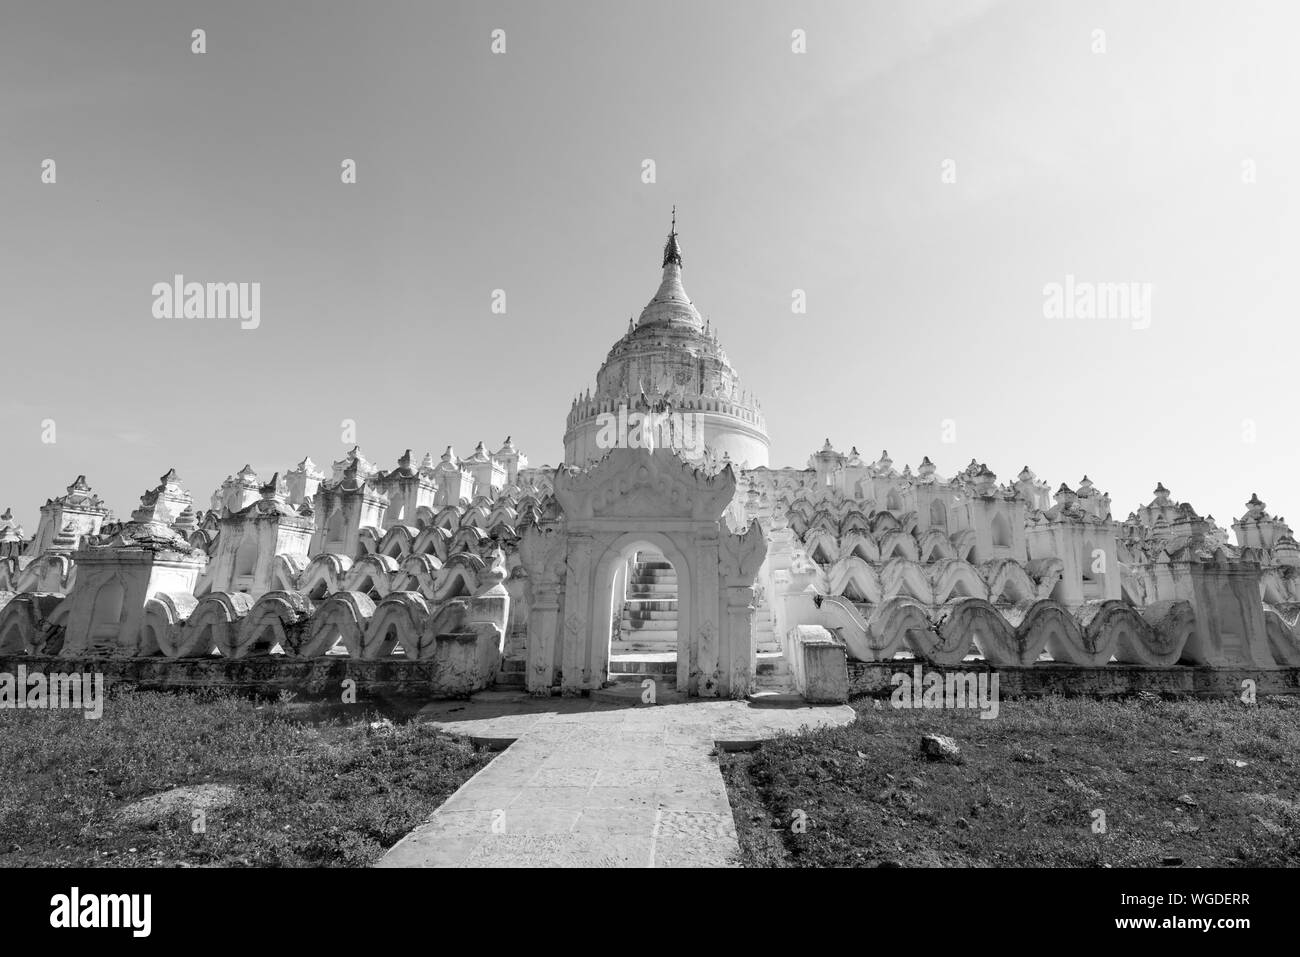 Photo noir et blanc d'un impressionnant temple bouddhiste appelé Pagode Hsinbyume, situé à proximité de Mandalay, Myanmar Banque D'Images